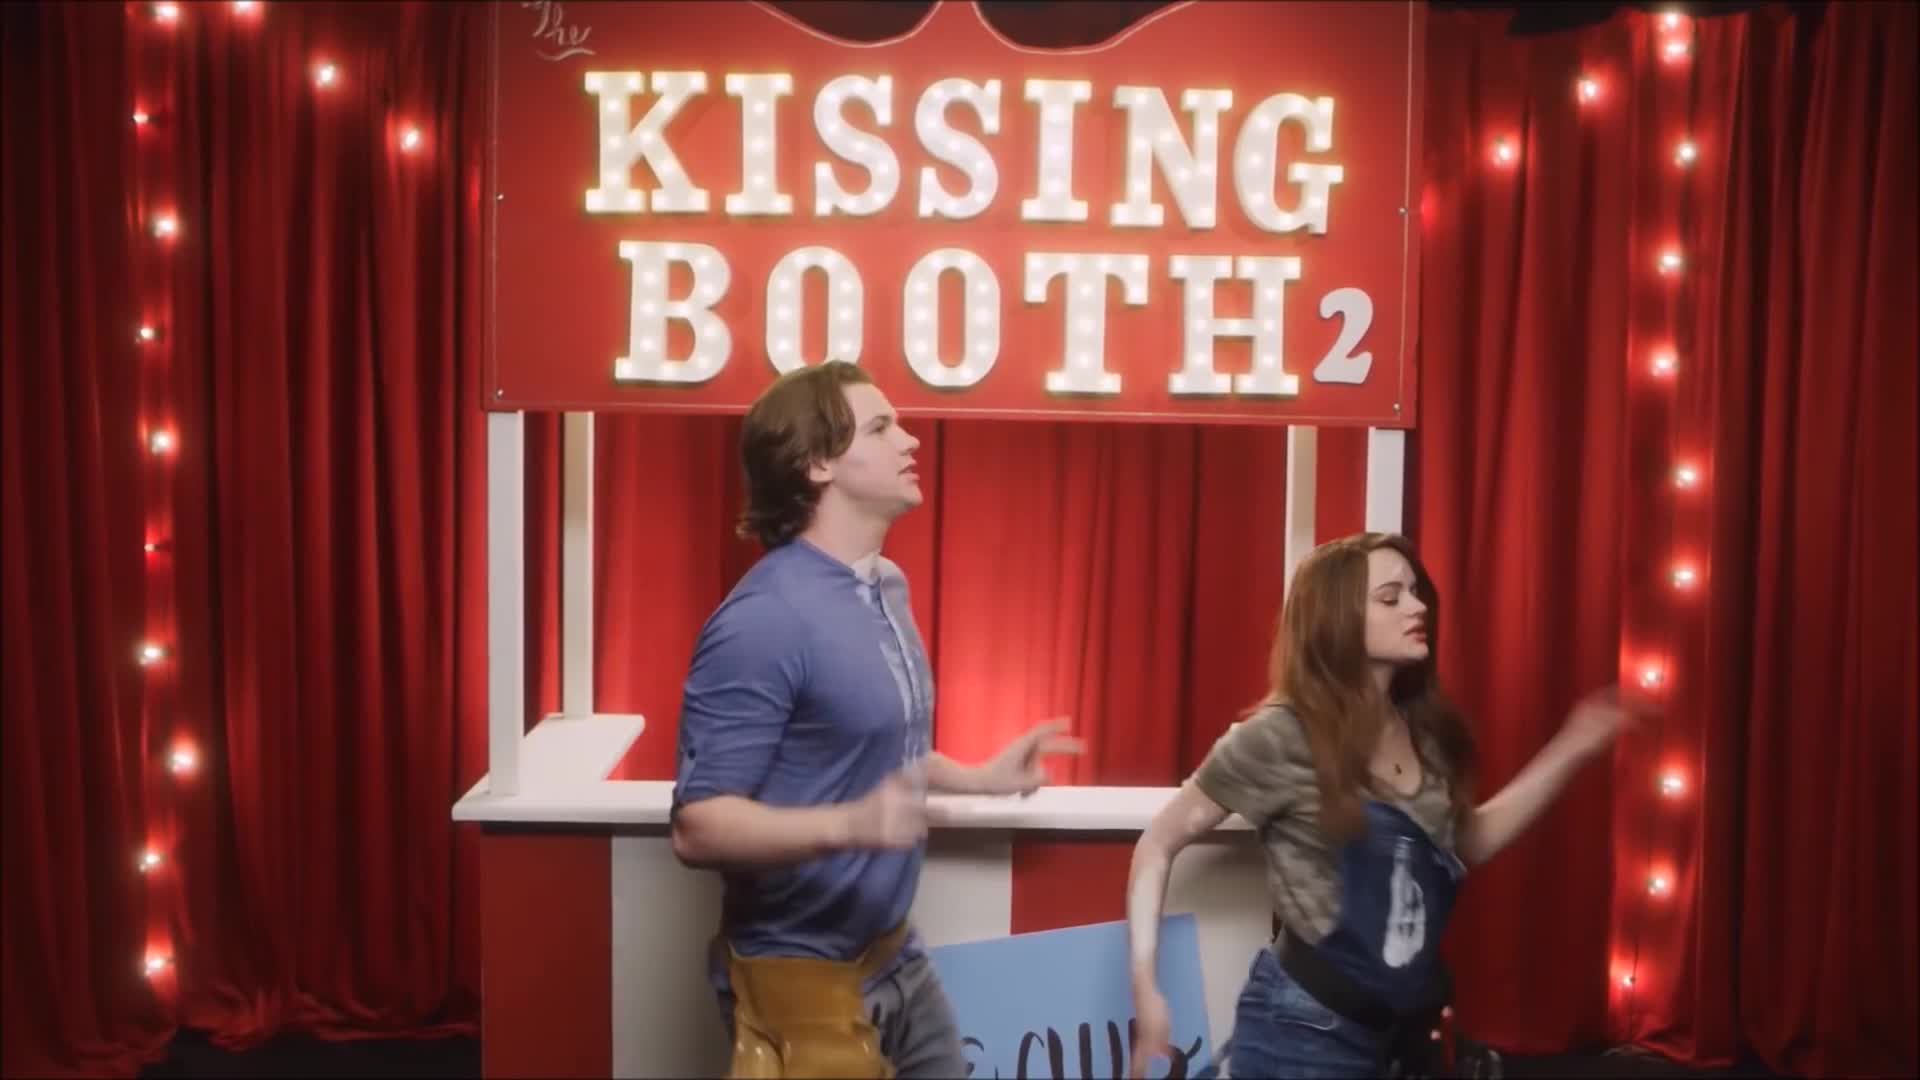 The kiss booth. Эль Эванс будка поцелуев. Будка поцелуев омгешки. Будка поцелуев фотозона.